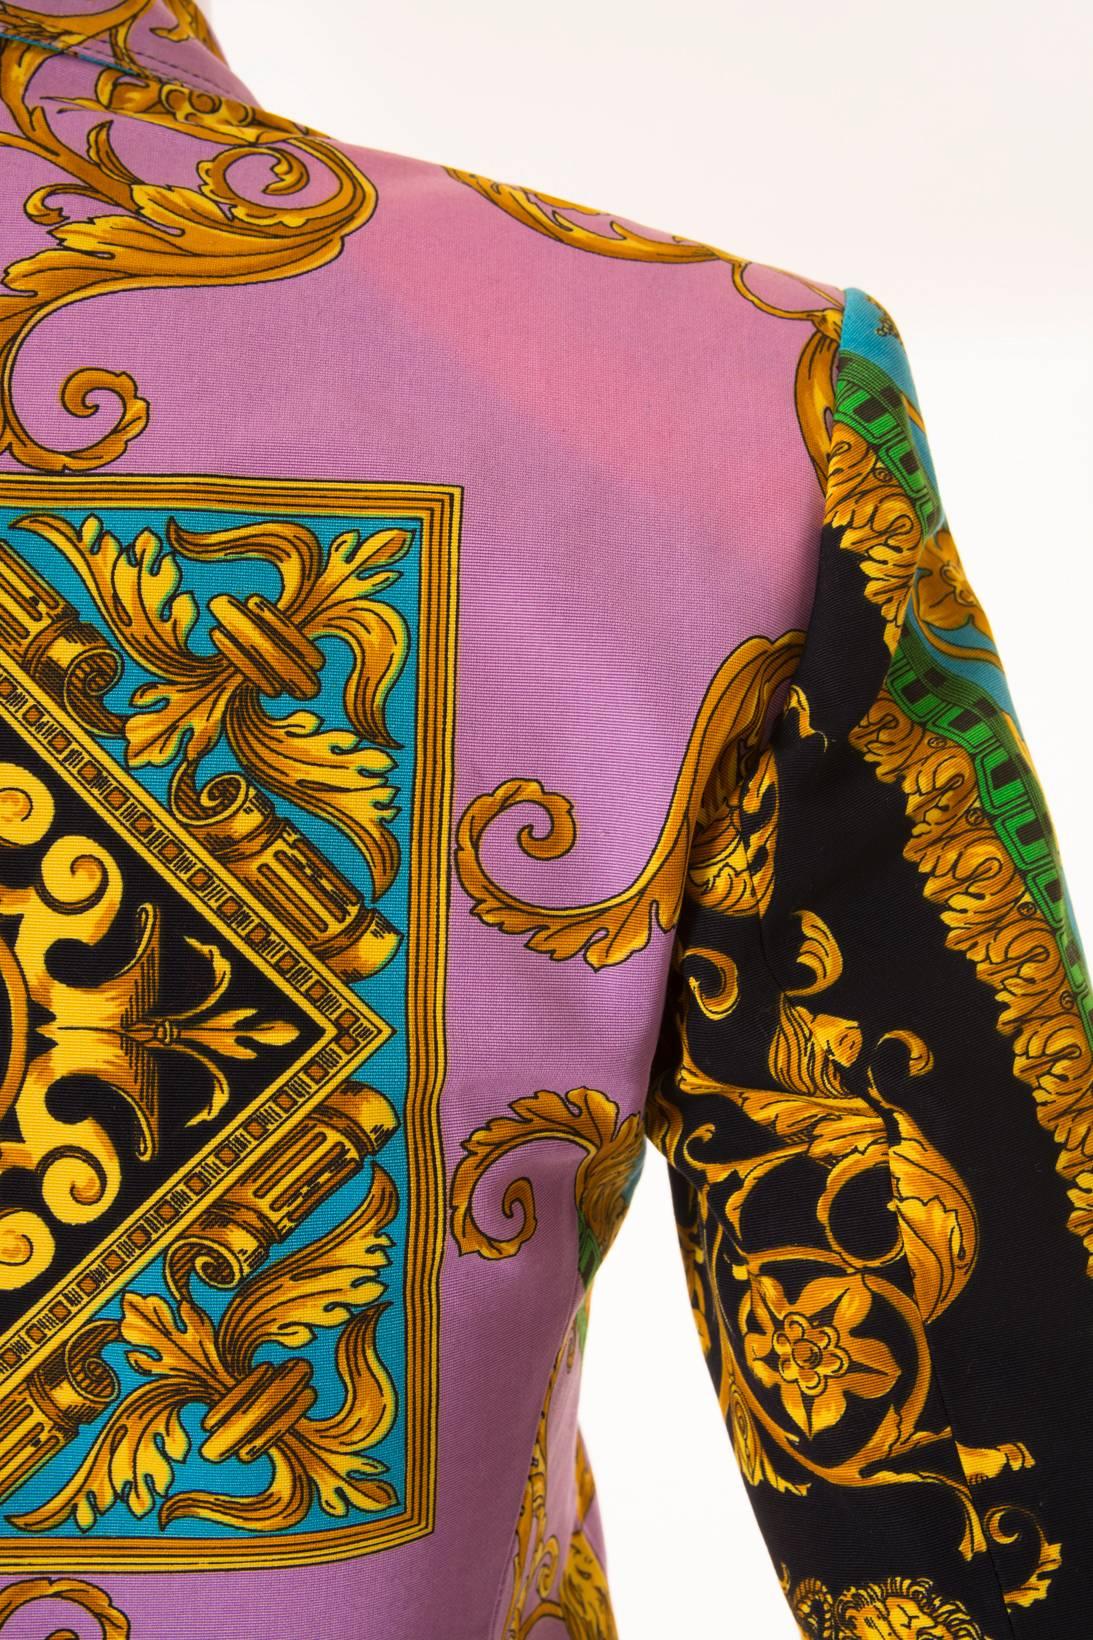 Versus Gianni Versace Baroque Skirt Suit 2